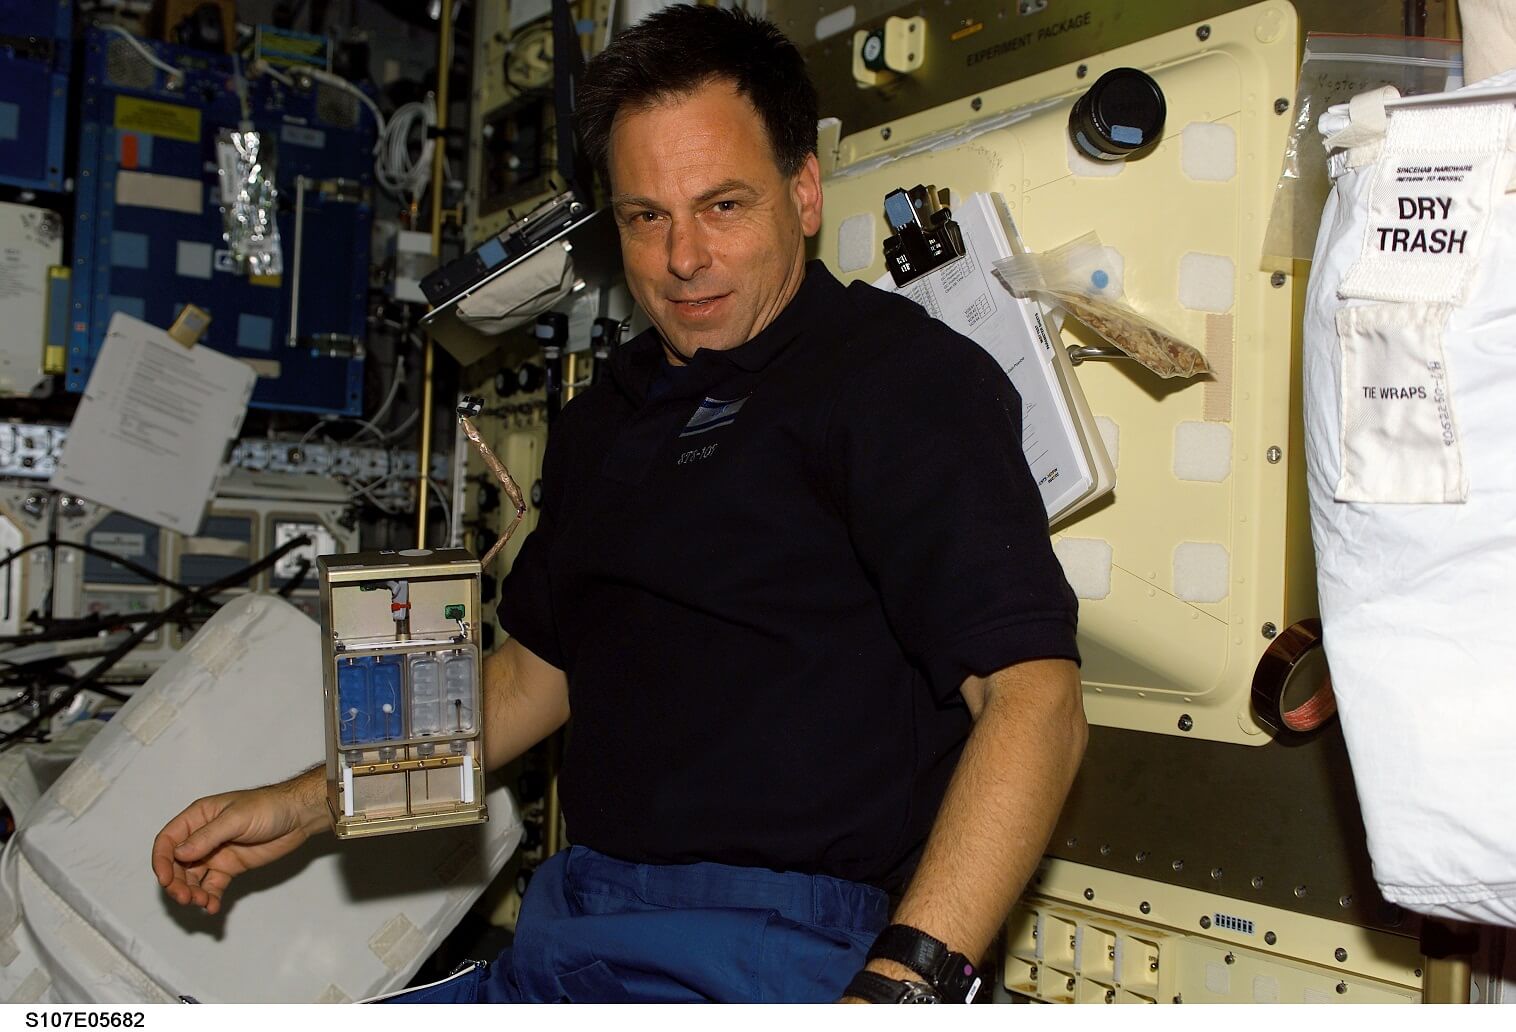 The late Ilan Ramon on the Columbia shuttle, on flight STS-107. Photo: NASA